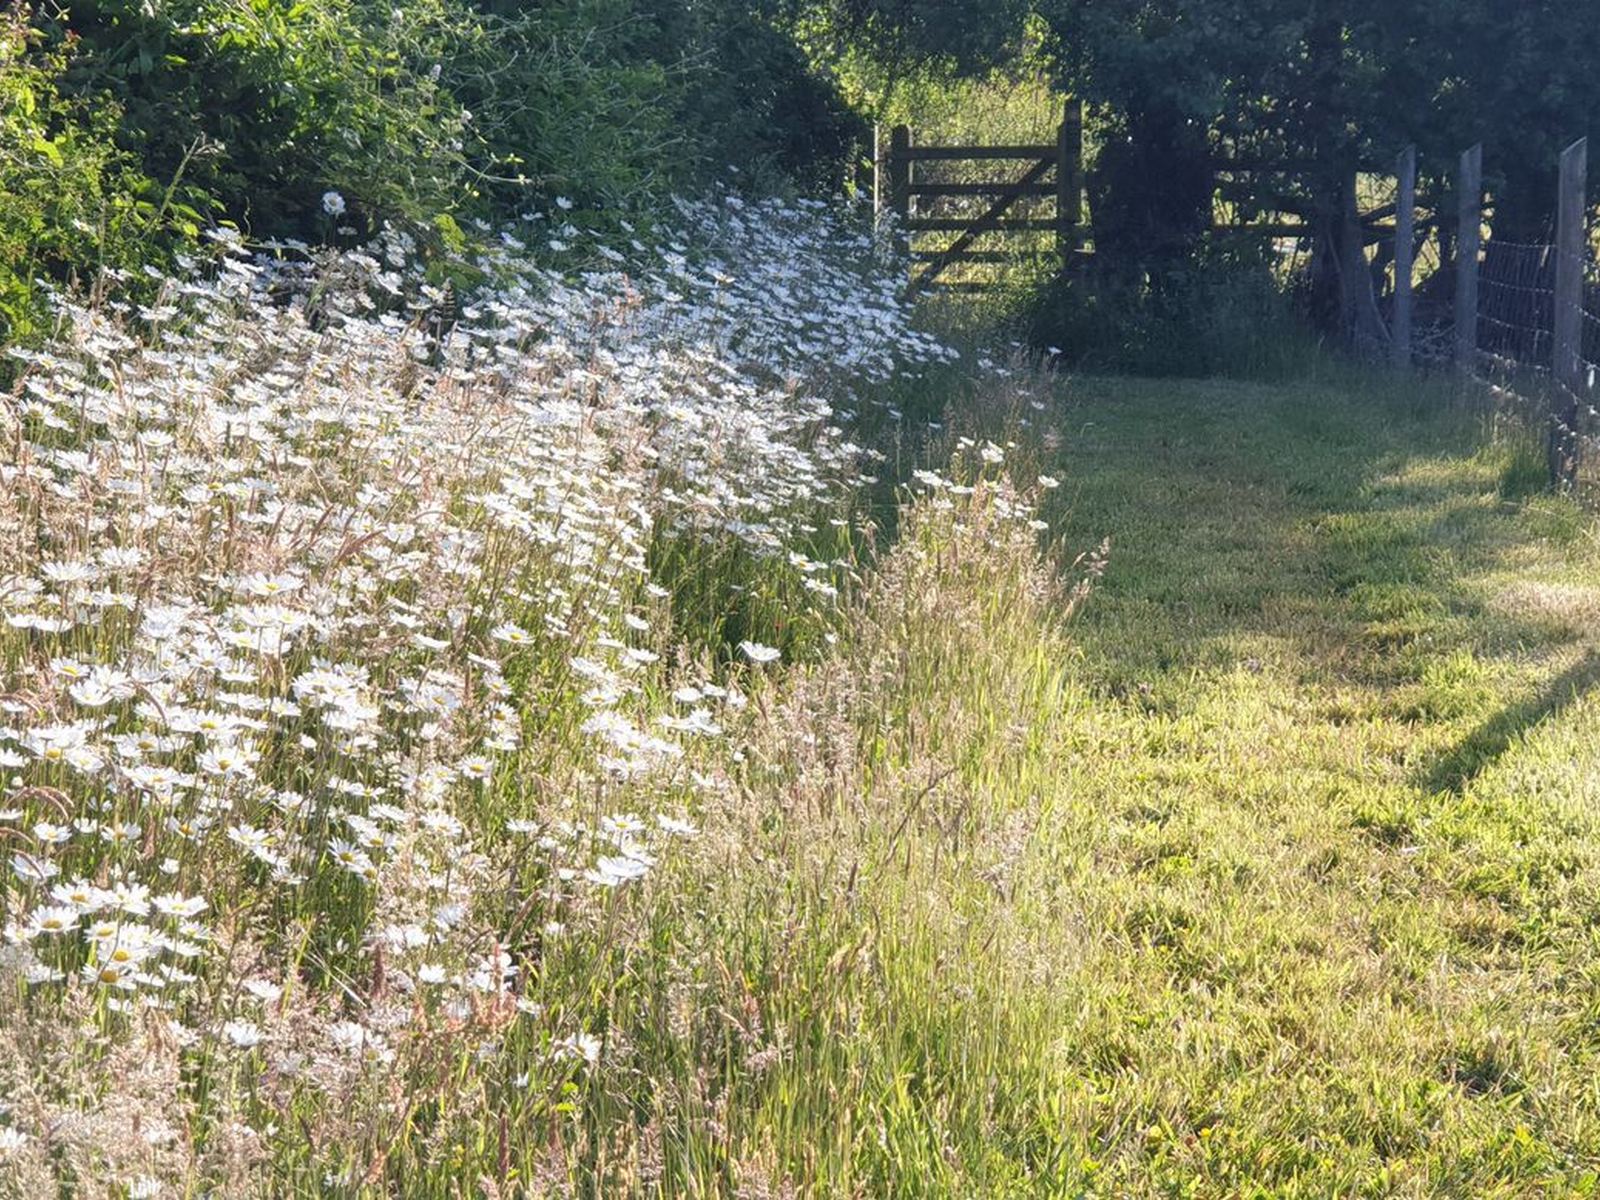 wildflower margin to mown lawn grassland strip